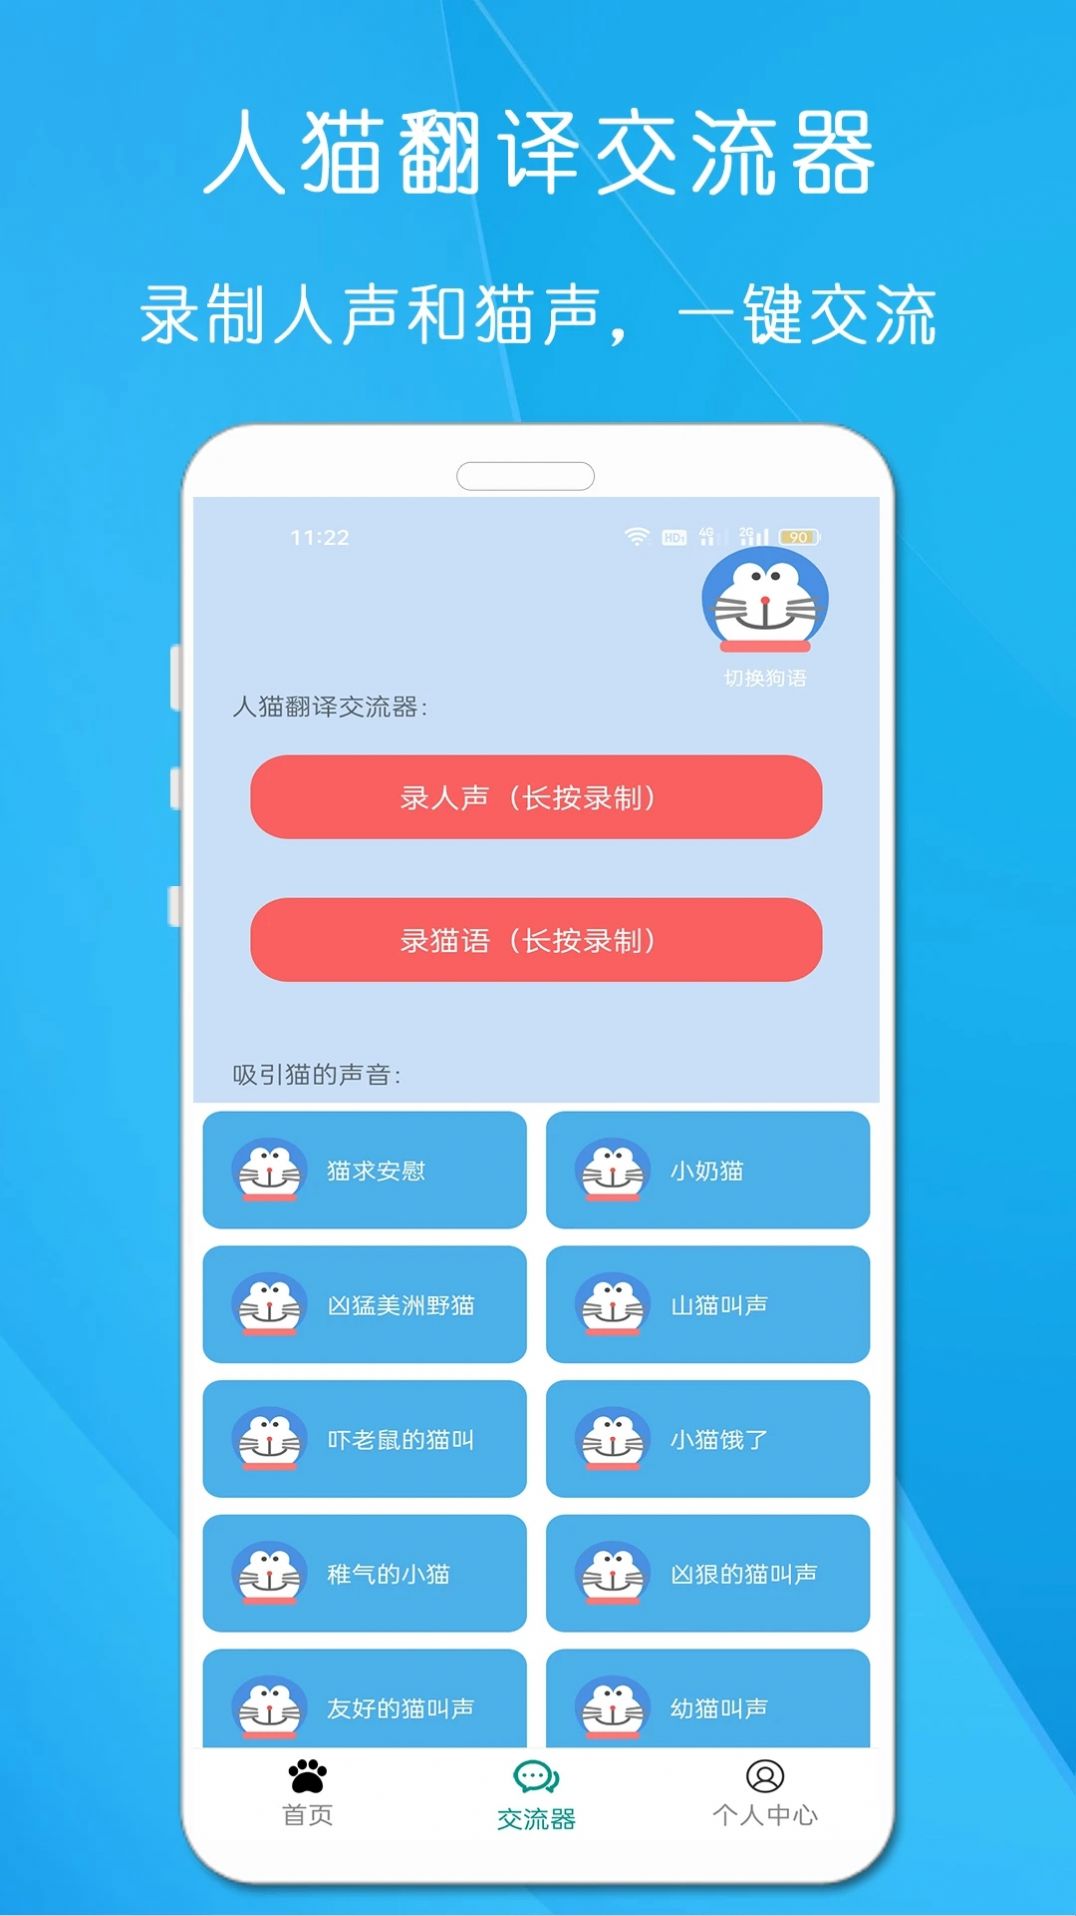 狗语猫语翻译器安全下载app图片1